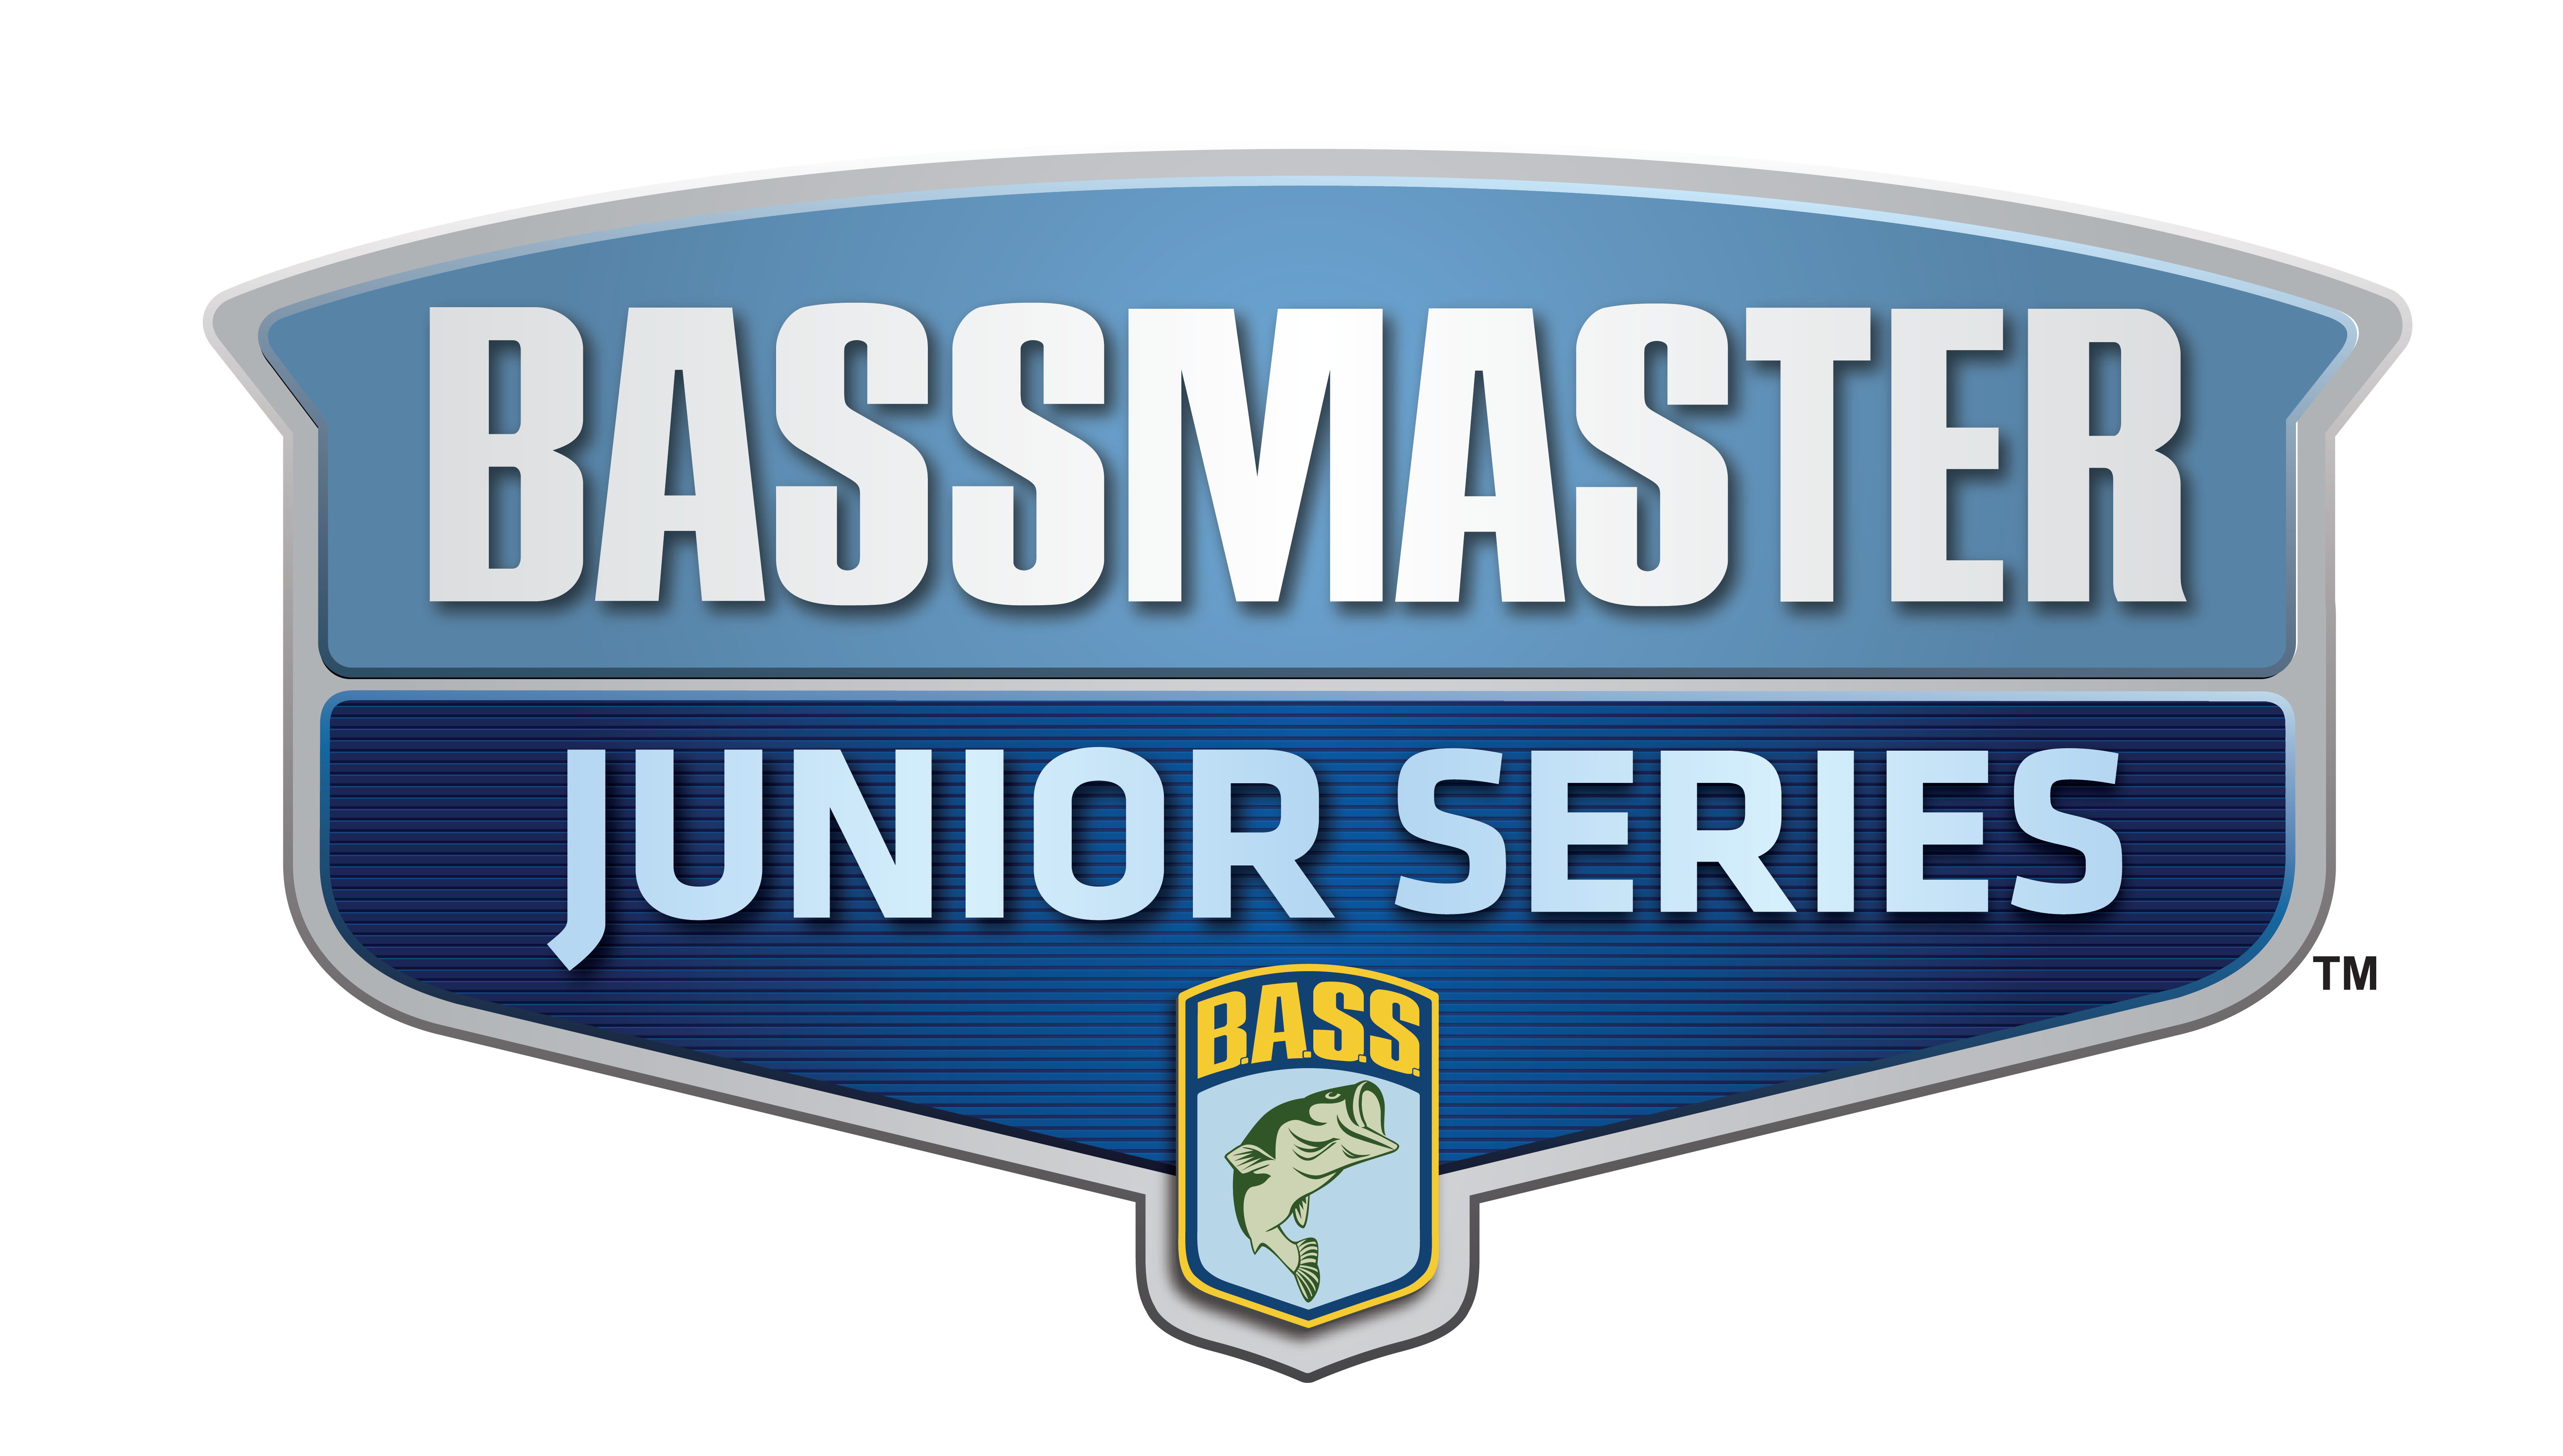 Junior: Championship weigh-in - Bassmaster